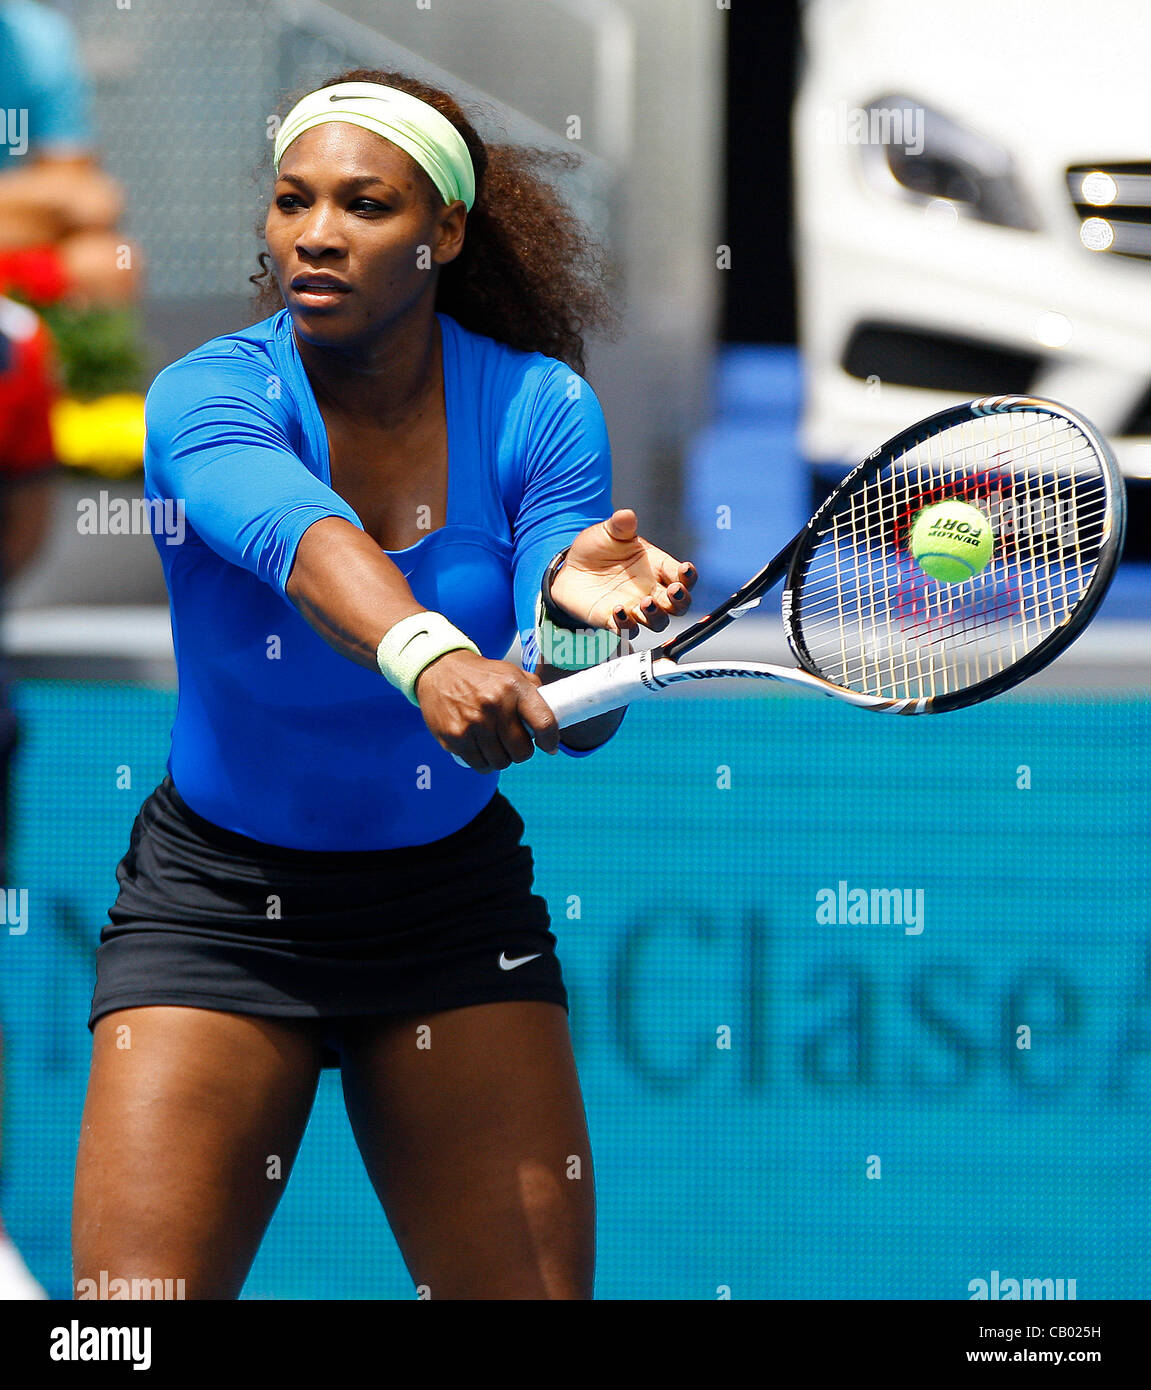 12.05.2012 Madrid, Spanien. Serena Williams in Aktion gegen Lucie Hradecka während das Halbfinale Einzel WTA Madrid Masters-Tennisturnier. Stockfoto